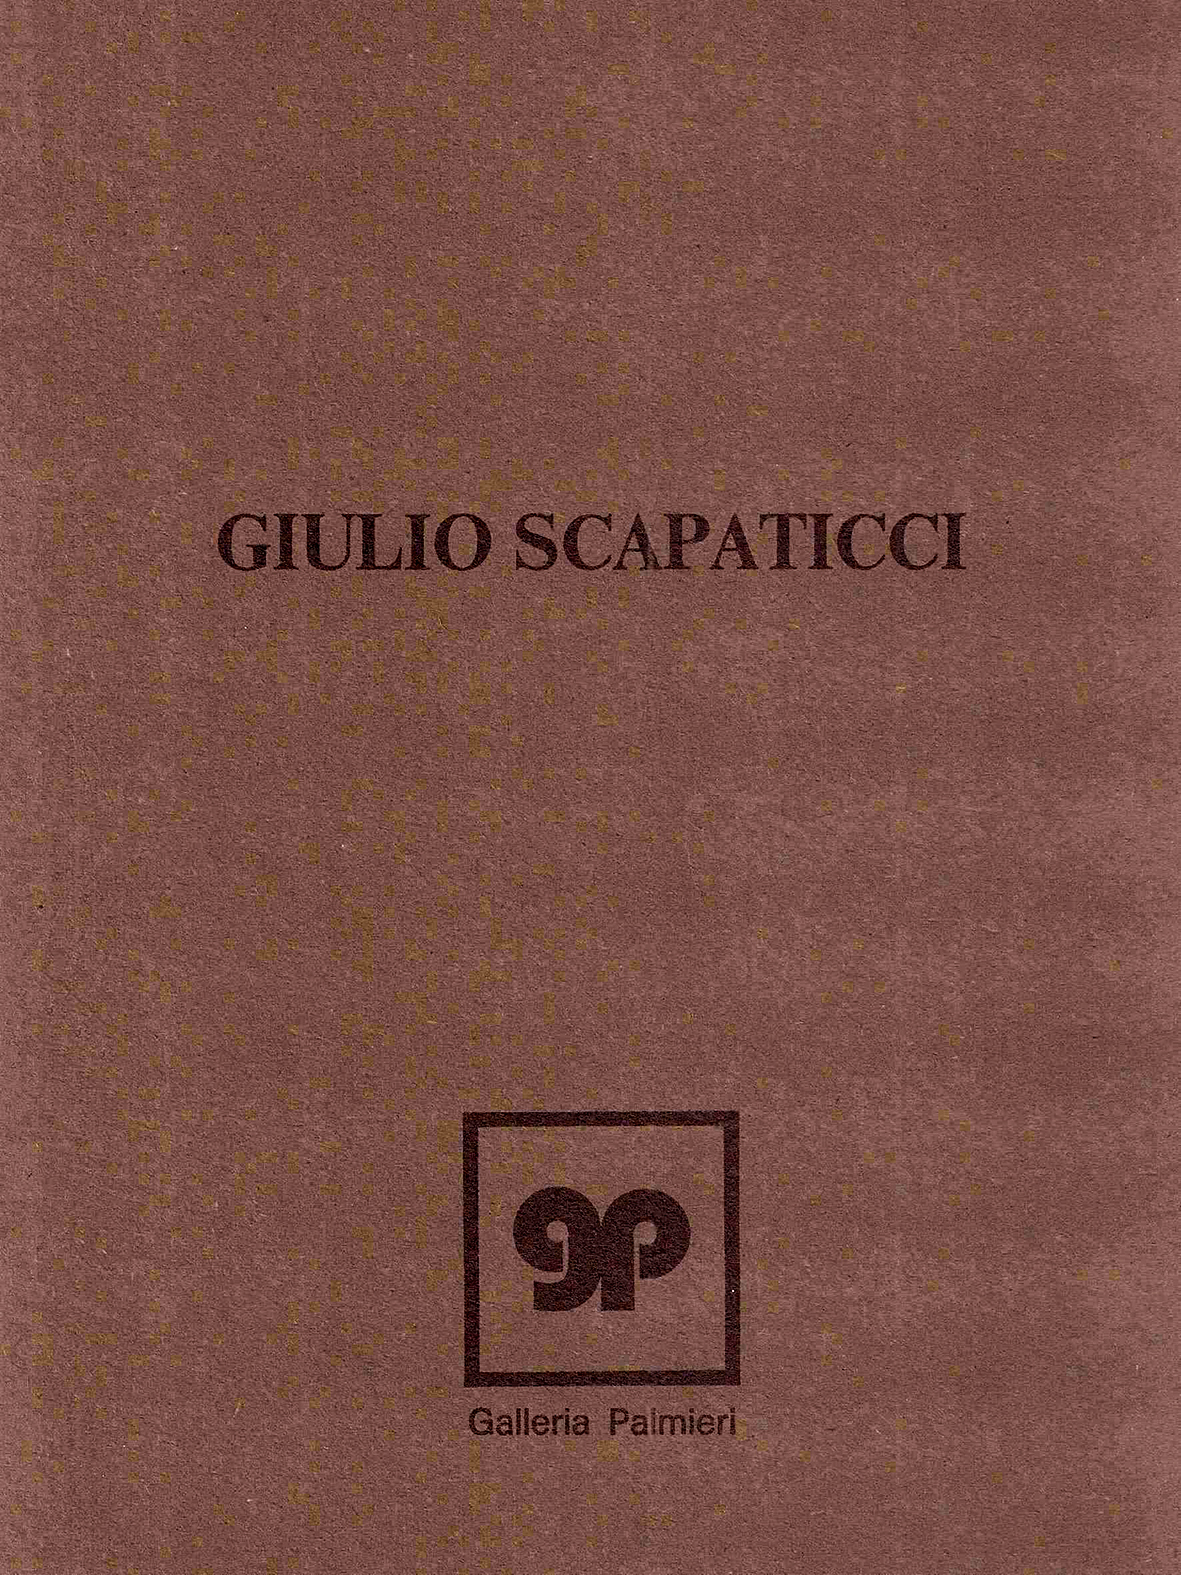 Giulio Scapaticci